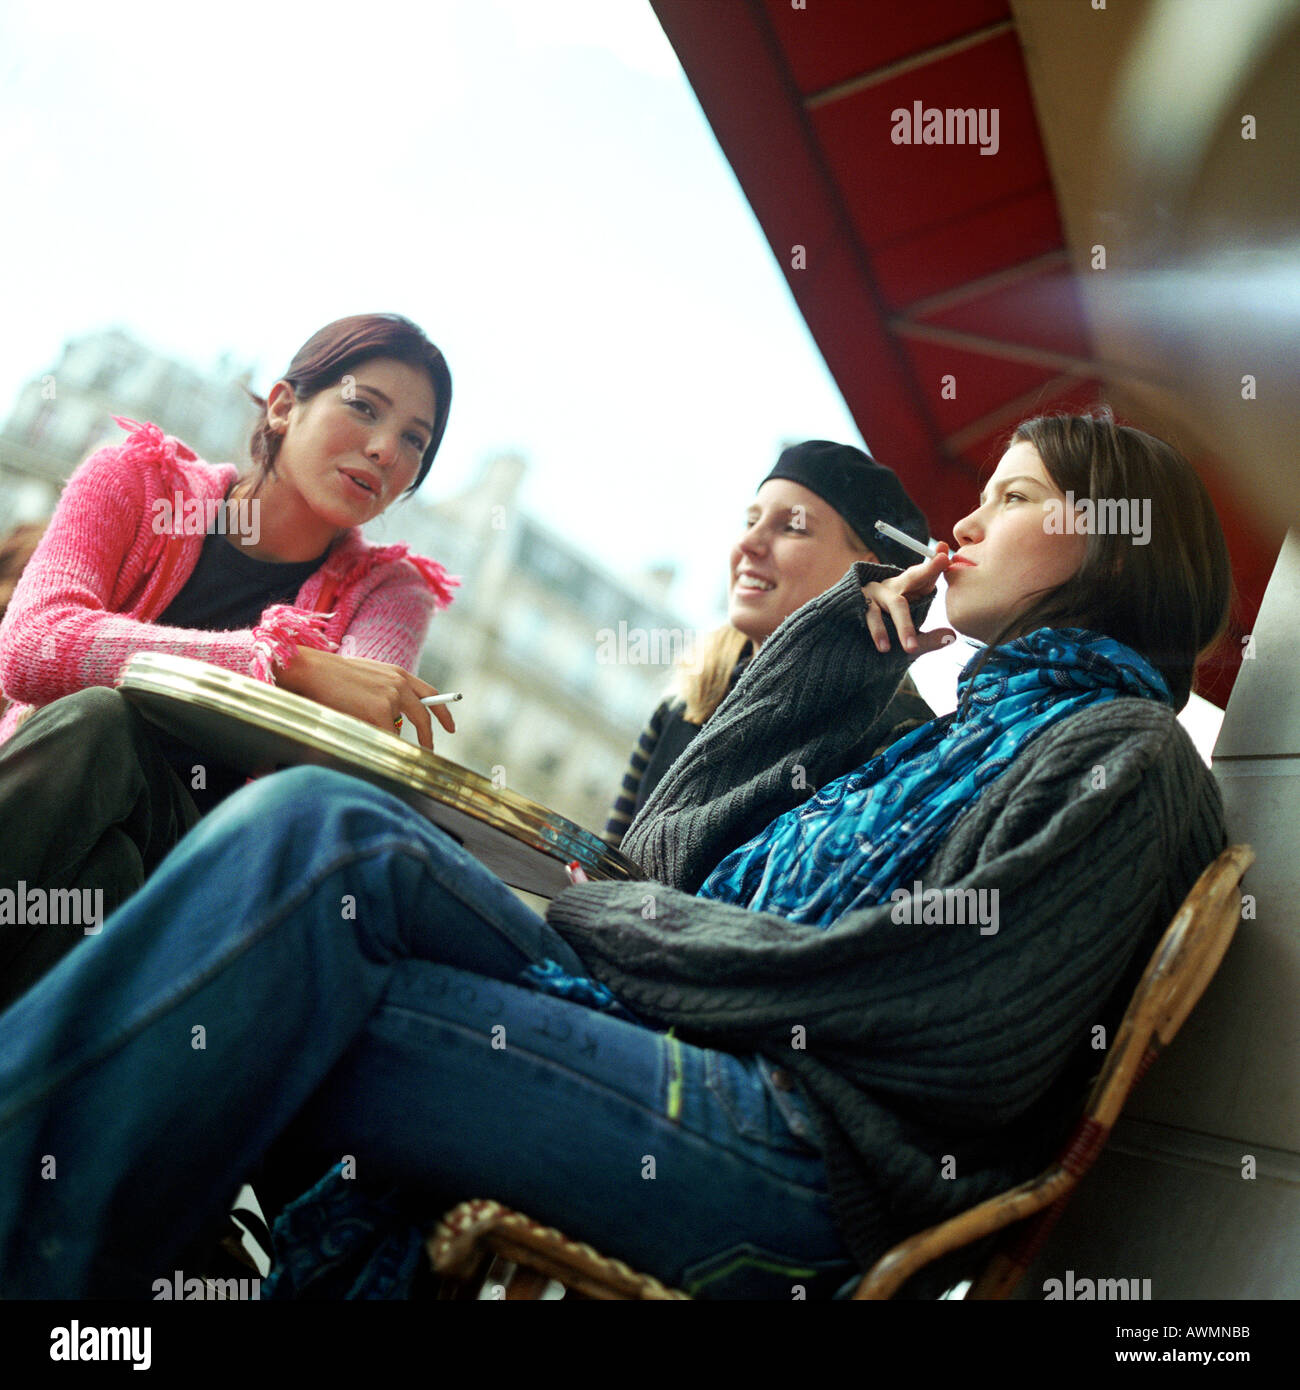 Drei Mädchen im Teenageralter sitzen im Caféterrasse, das Rauchen von Zigaretten, niedrigen Winkel Ansicht Stockfoto